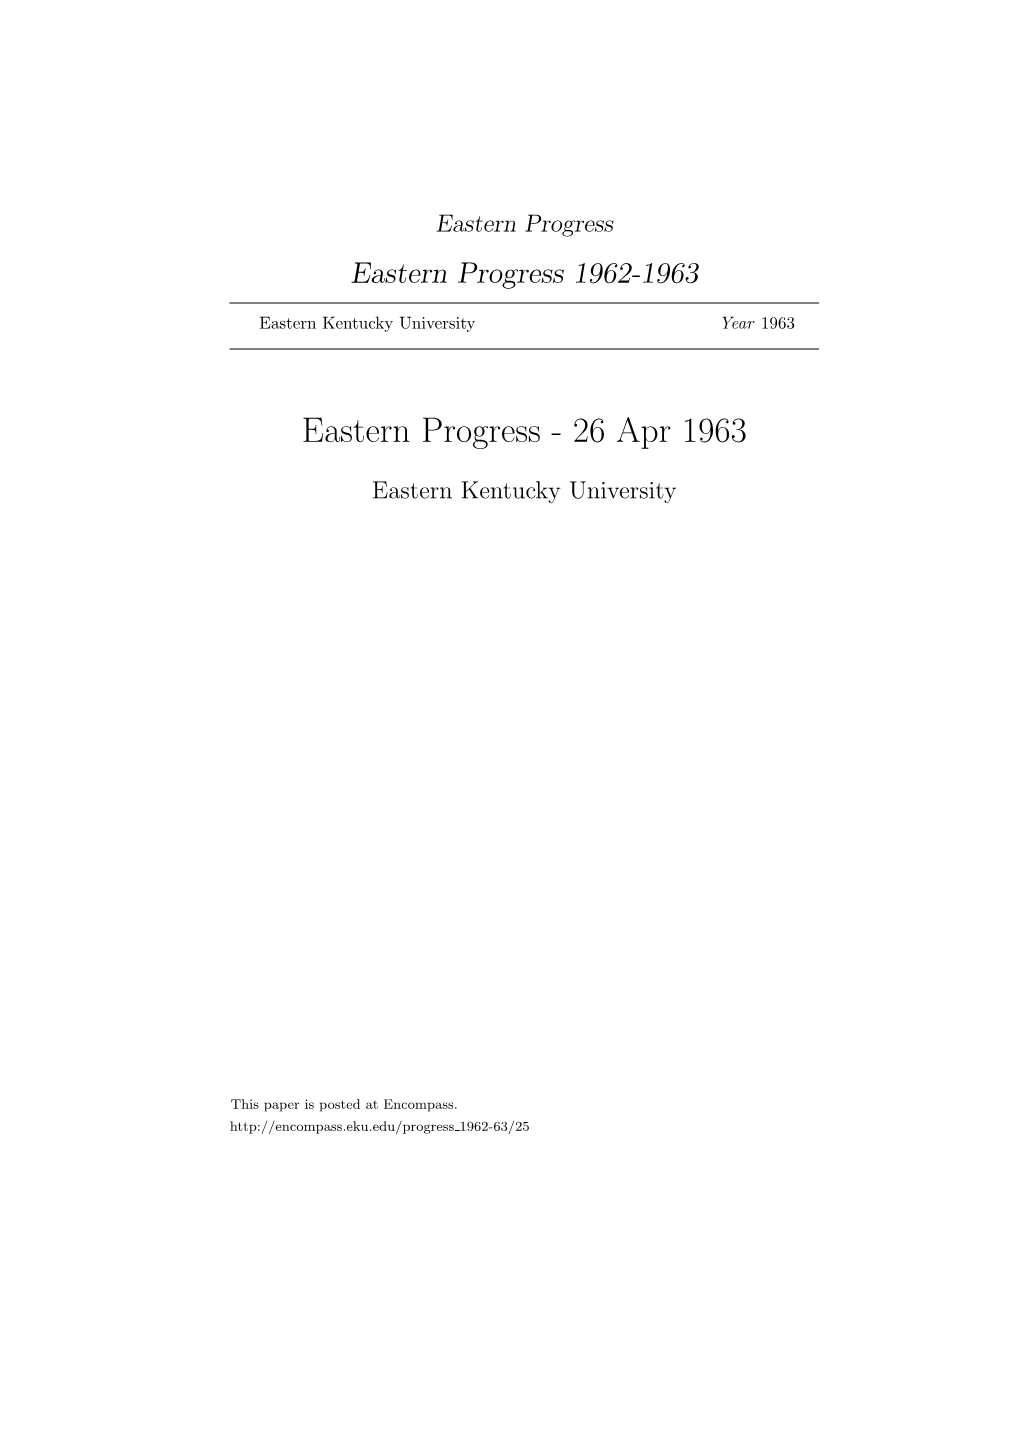 Eastern Progress Eastern Progress 1962-1963